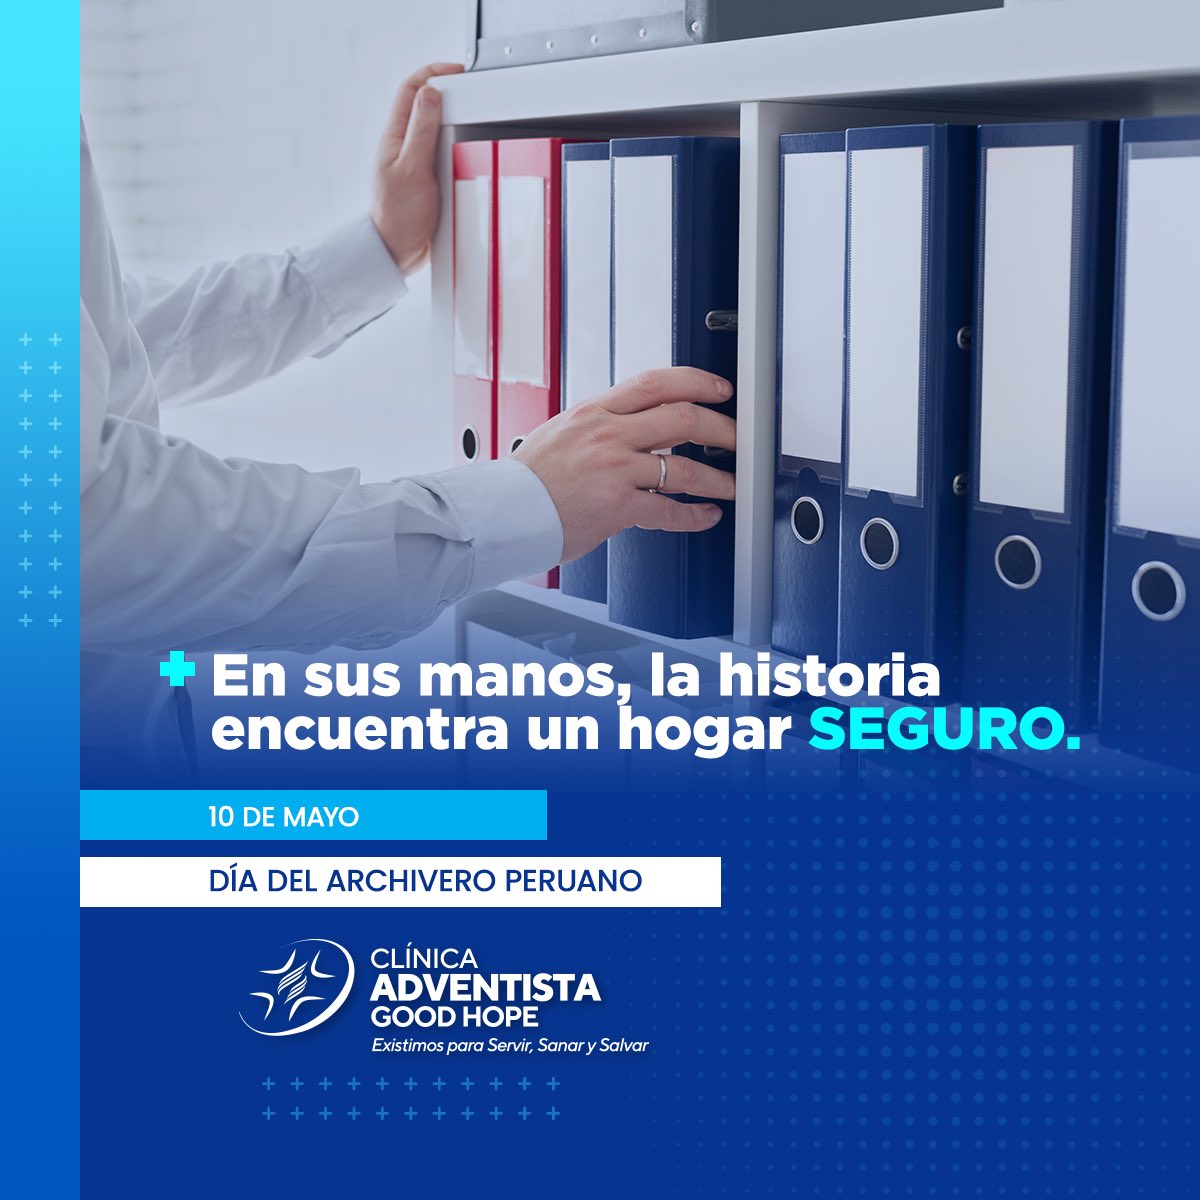 La #ClínicaGoodHope, en el Día del Archivero Peruano saluda afectuosamente a quienes con su labor meticulosa y compromiso cuidan la preservación de documentos para el funcionamiento de nuestra institución. 

Gracias por su dedicación y por ser pieza clave en nuestra historia.